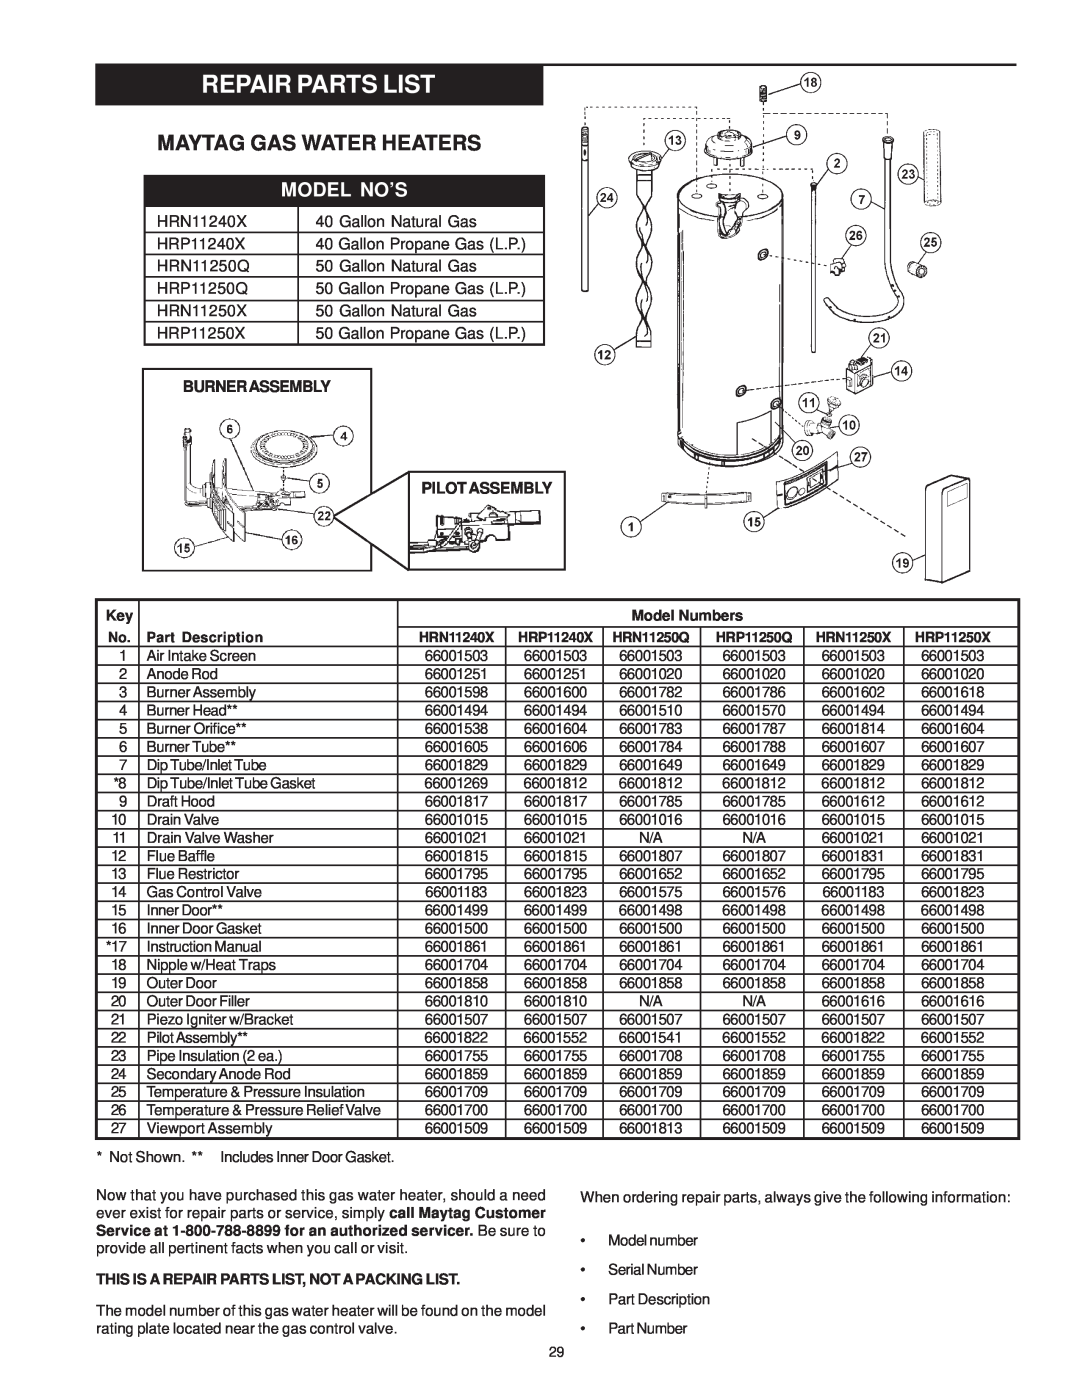 Maytag HRP31250Q, HRN11240X, HRN11250Q, HRP31240X, HRP11240X manual Repair Parts List, Maytag Gas Water Heaters, Model No’S 